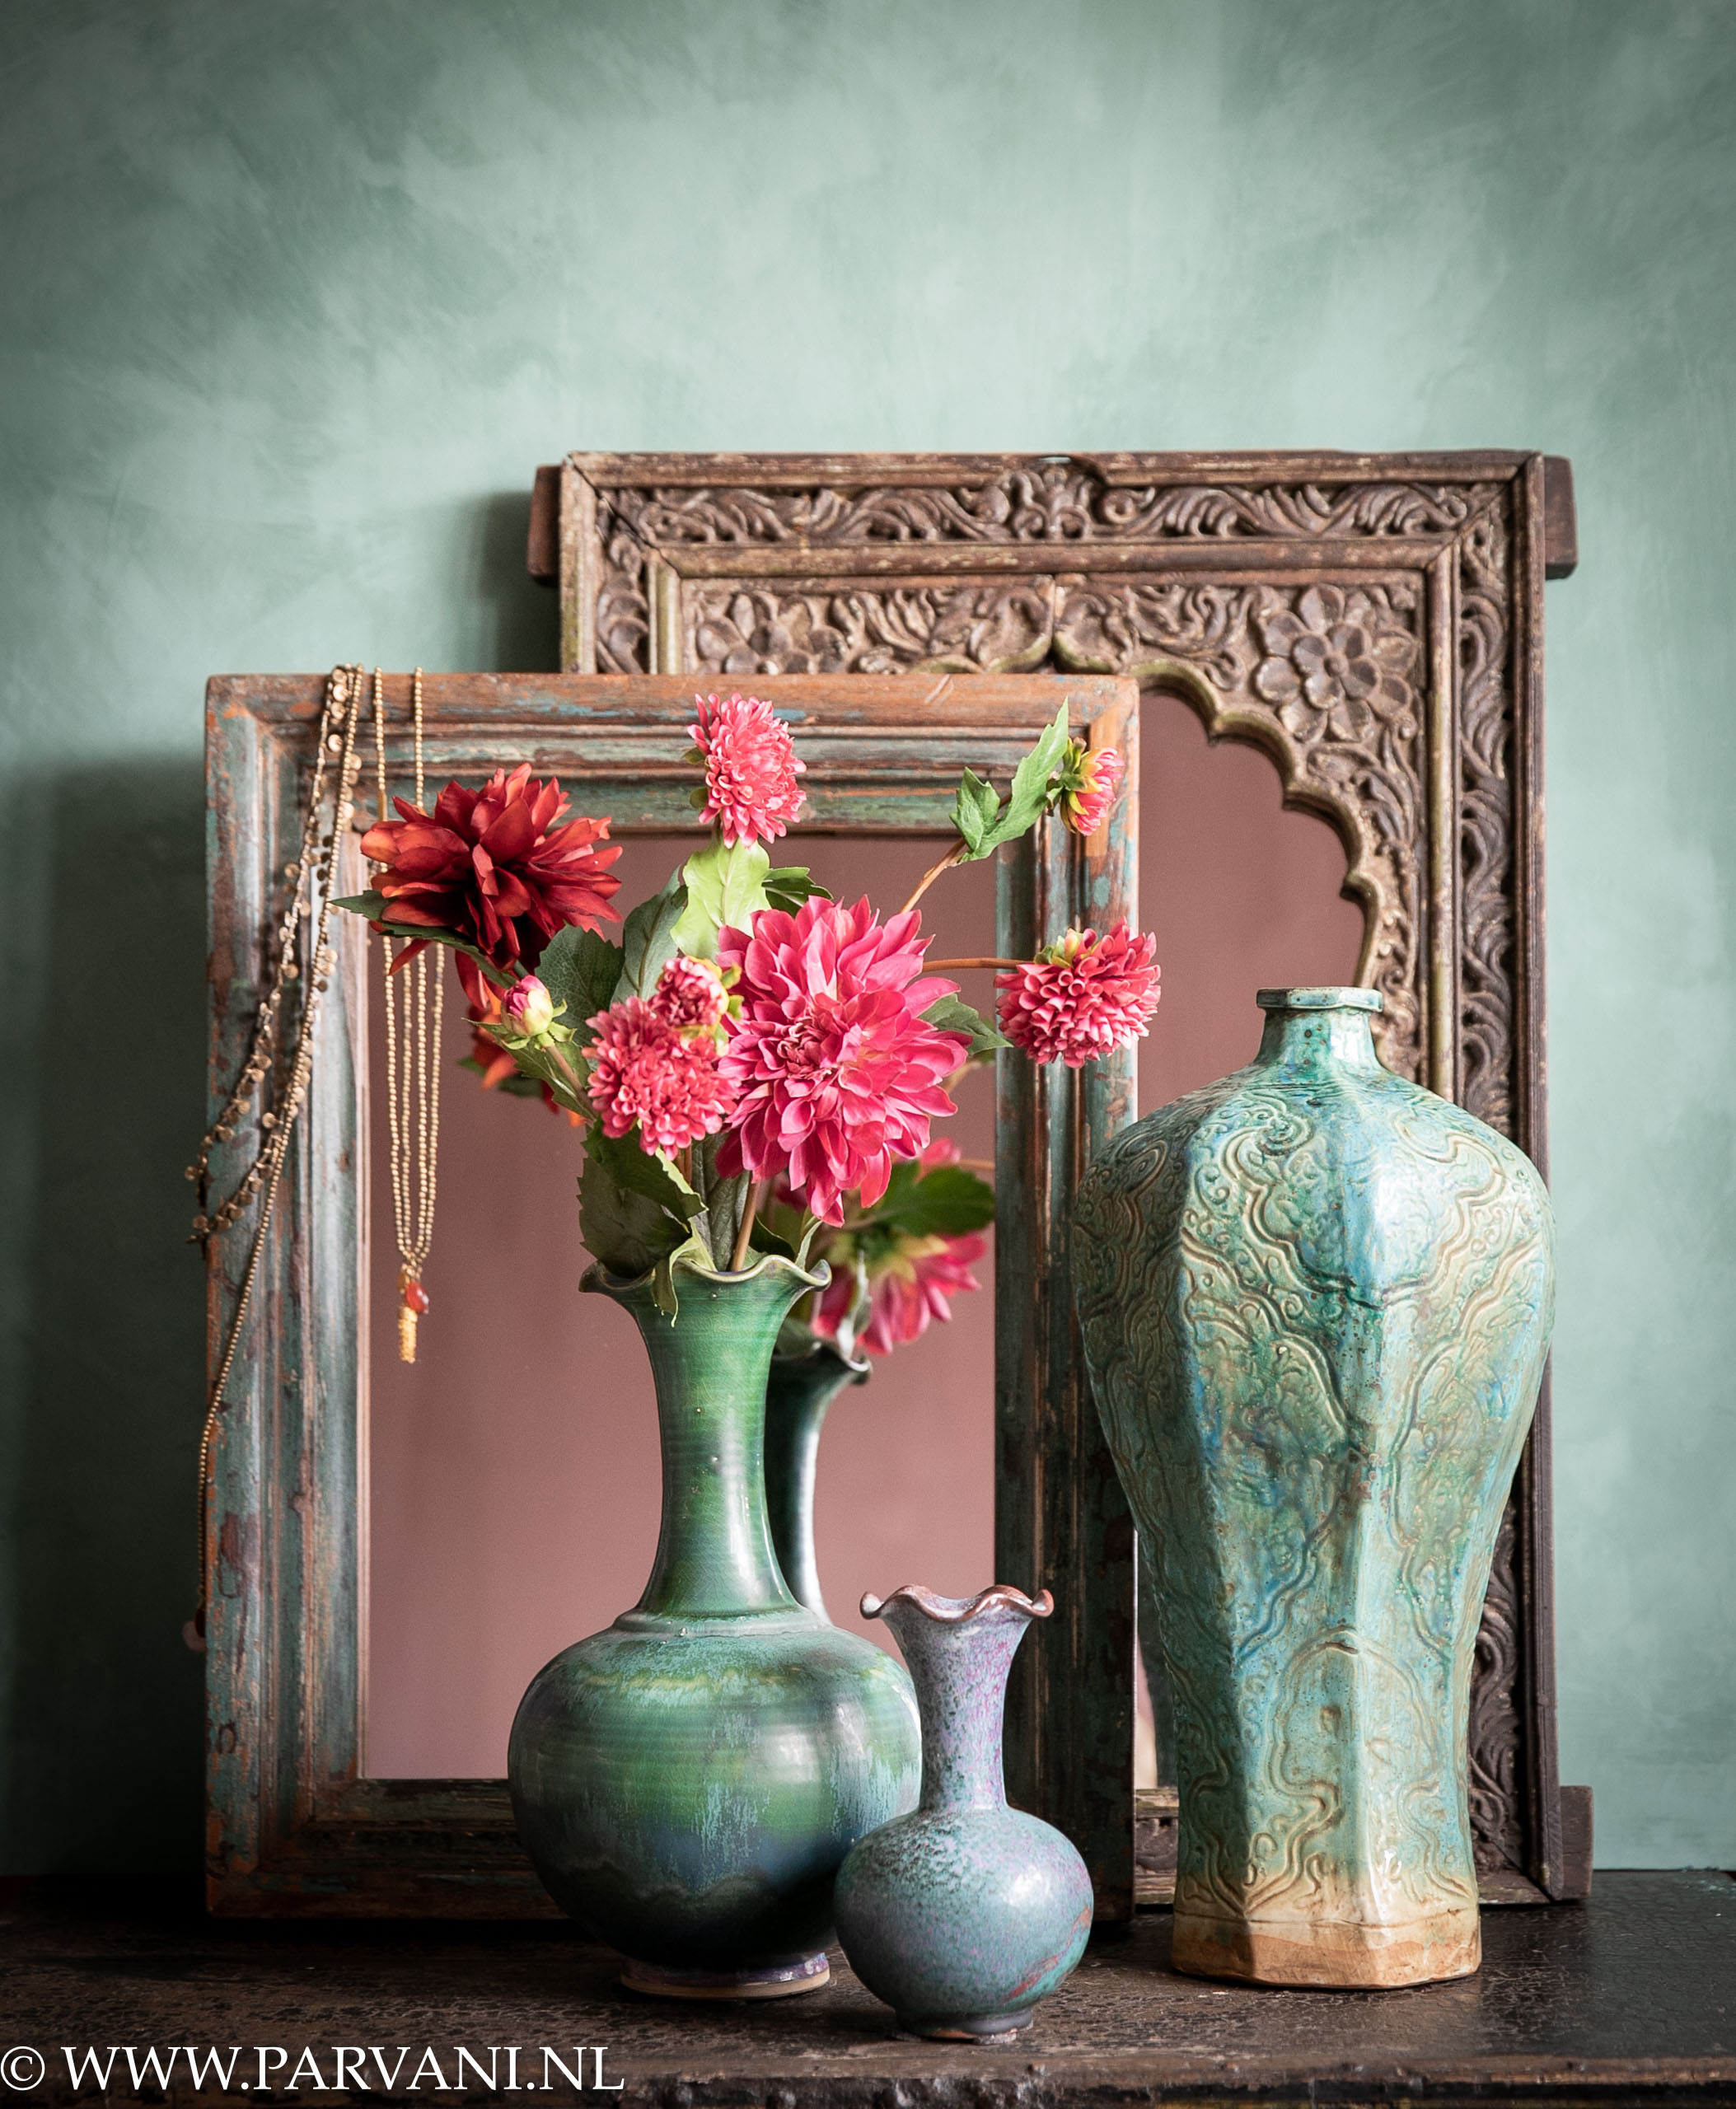 Oude houten spiegels India met snijwerk en porseleinen vazen groen turquoise met kalkverf blauw groen